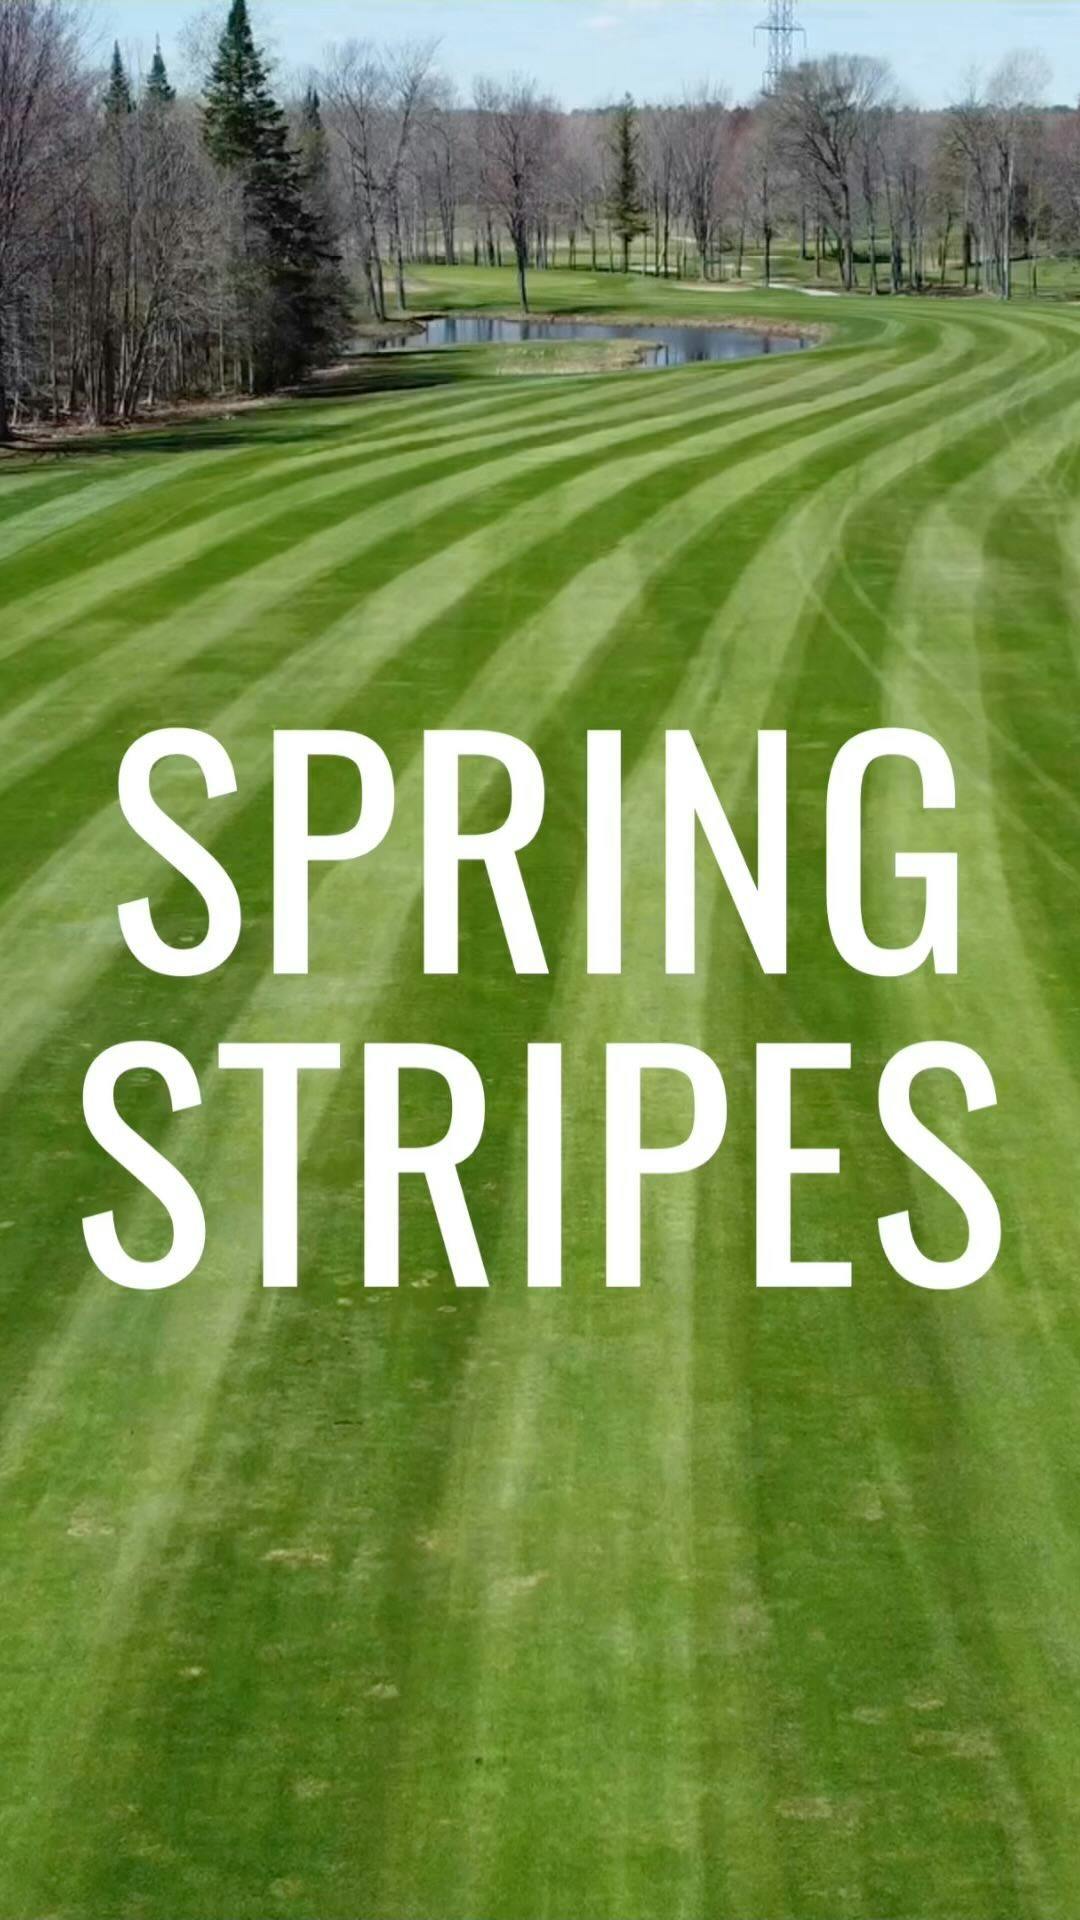 Spring stripes have arrived @therealturfcrew 🔥#SpringGolf